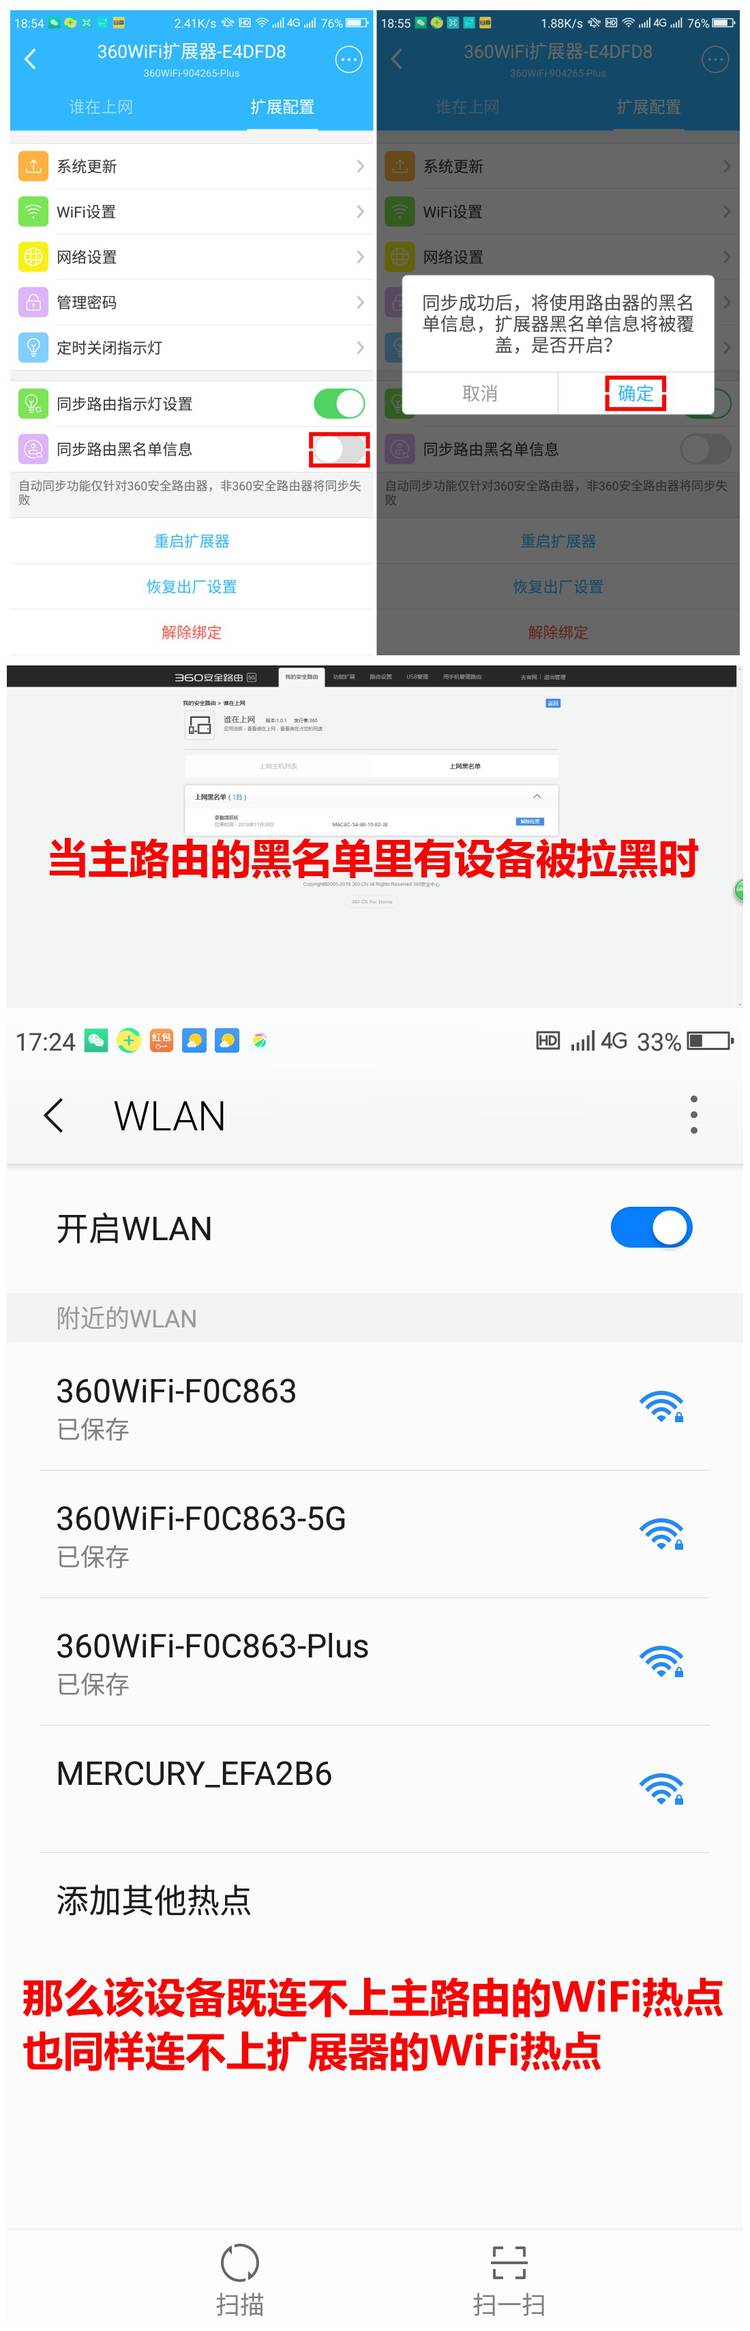 360智能管家app的WiFi扩展器管理界面介绍